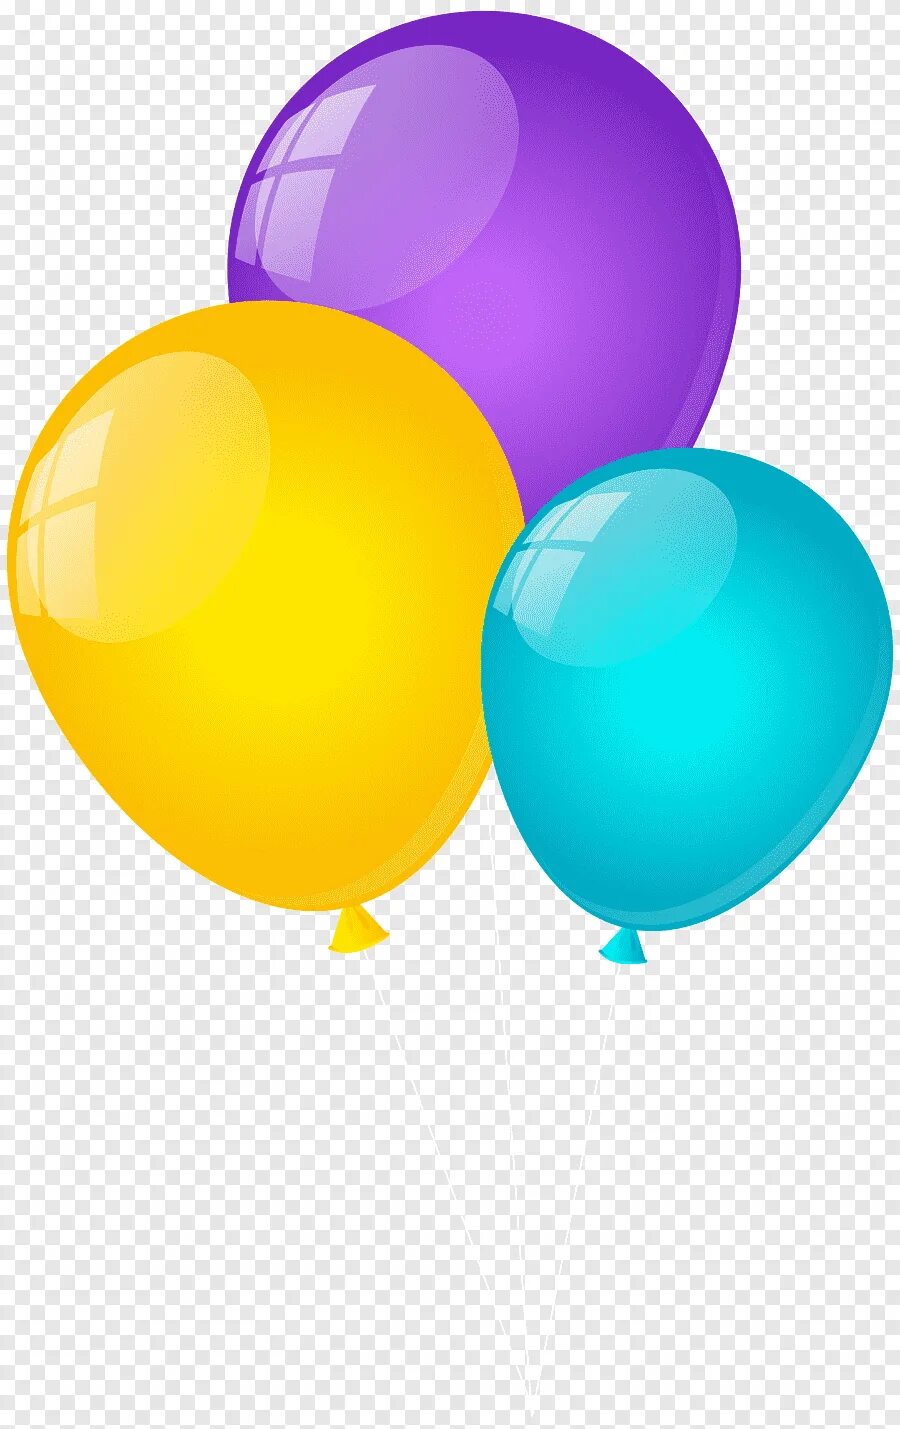 Три воздушных шарика. Шары клипарт. Воздушный шарик. Воздушные шары без фона. Шарики клипарт.